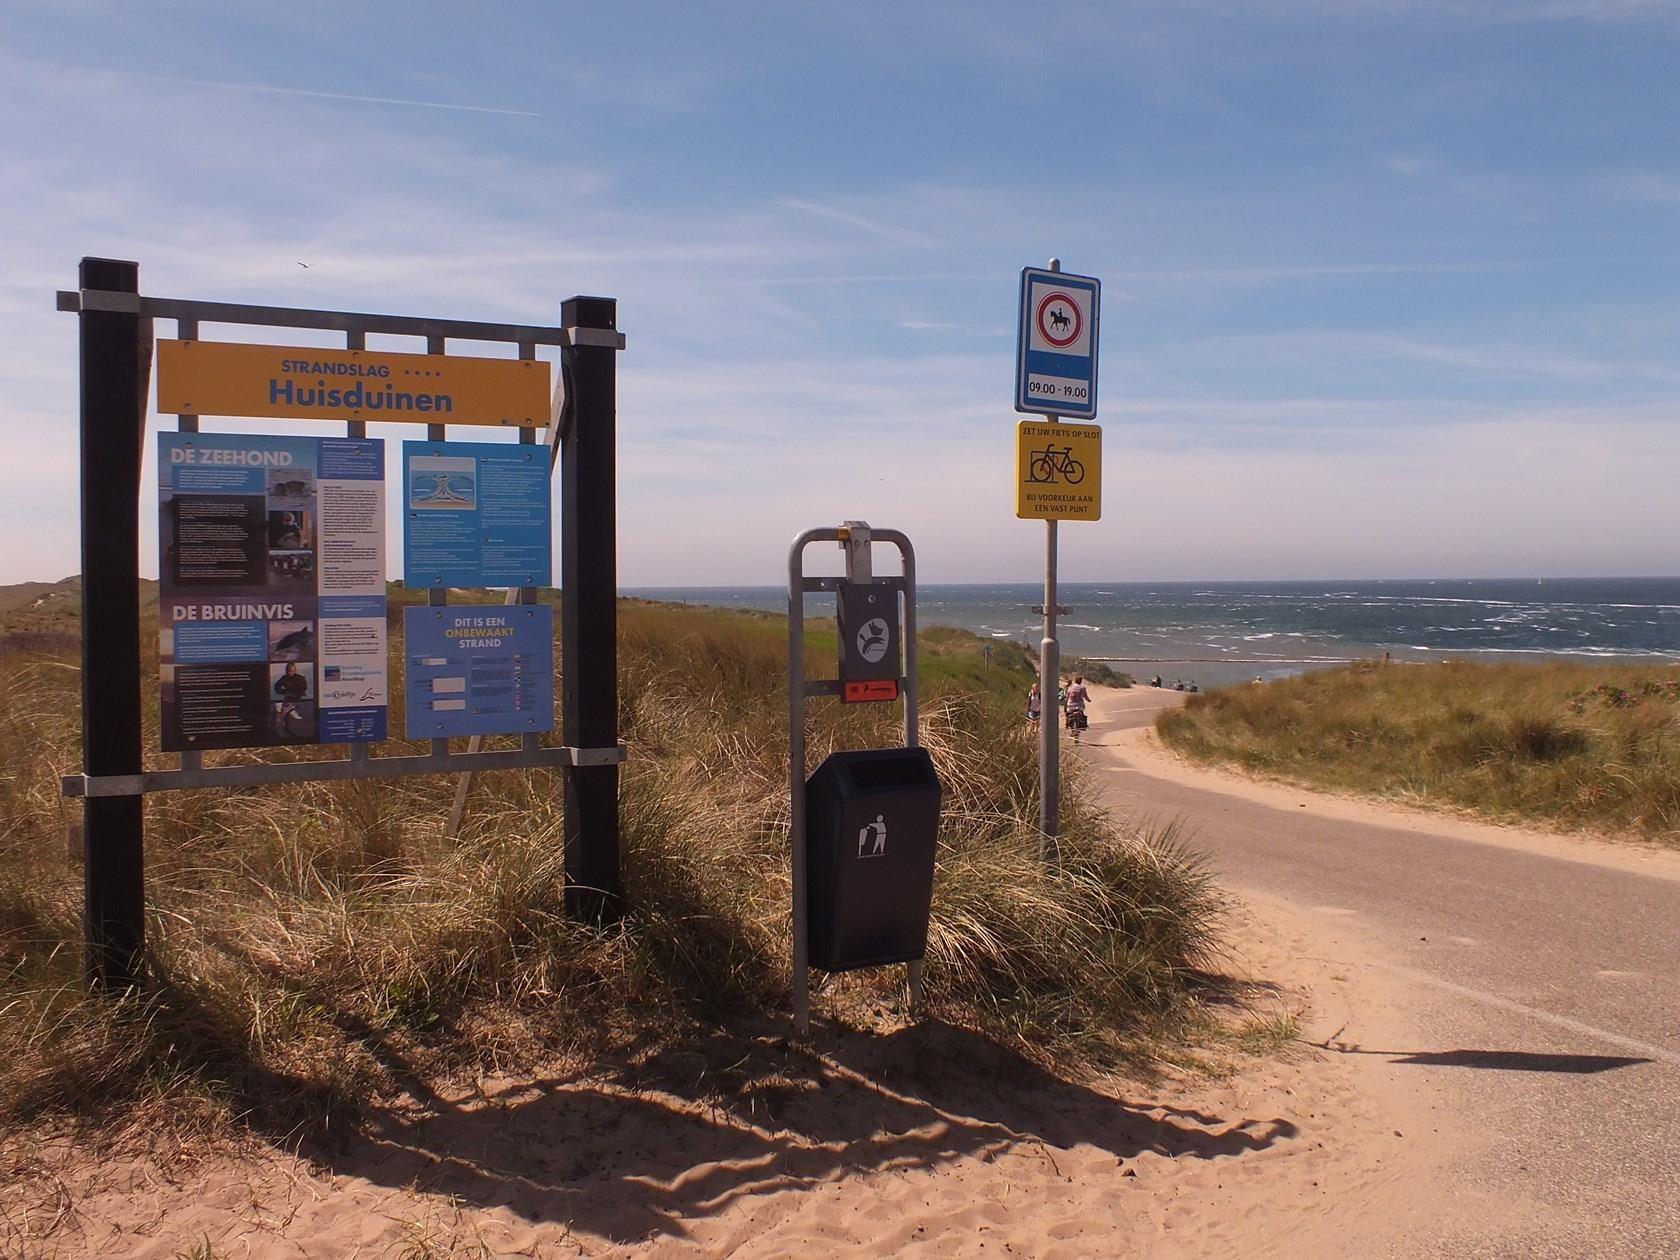 Beach entrance Huisduinen